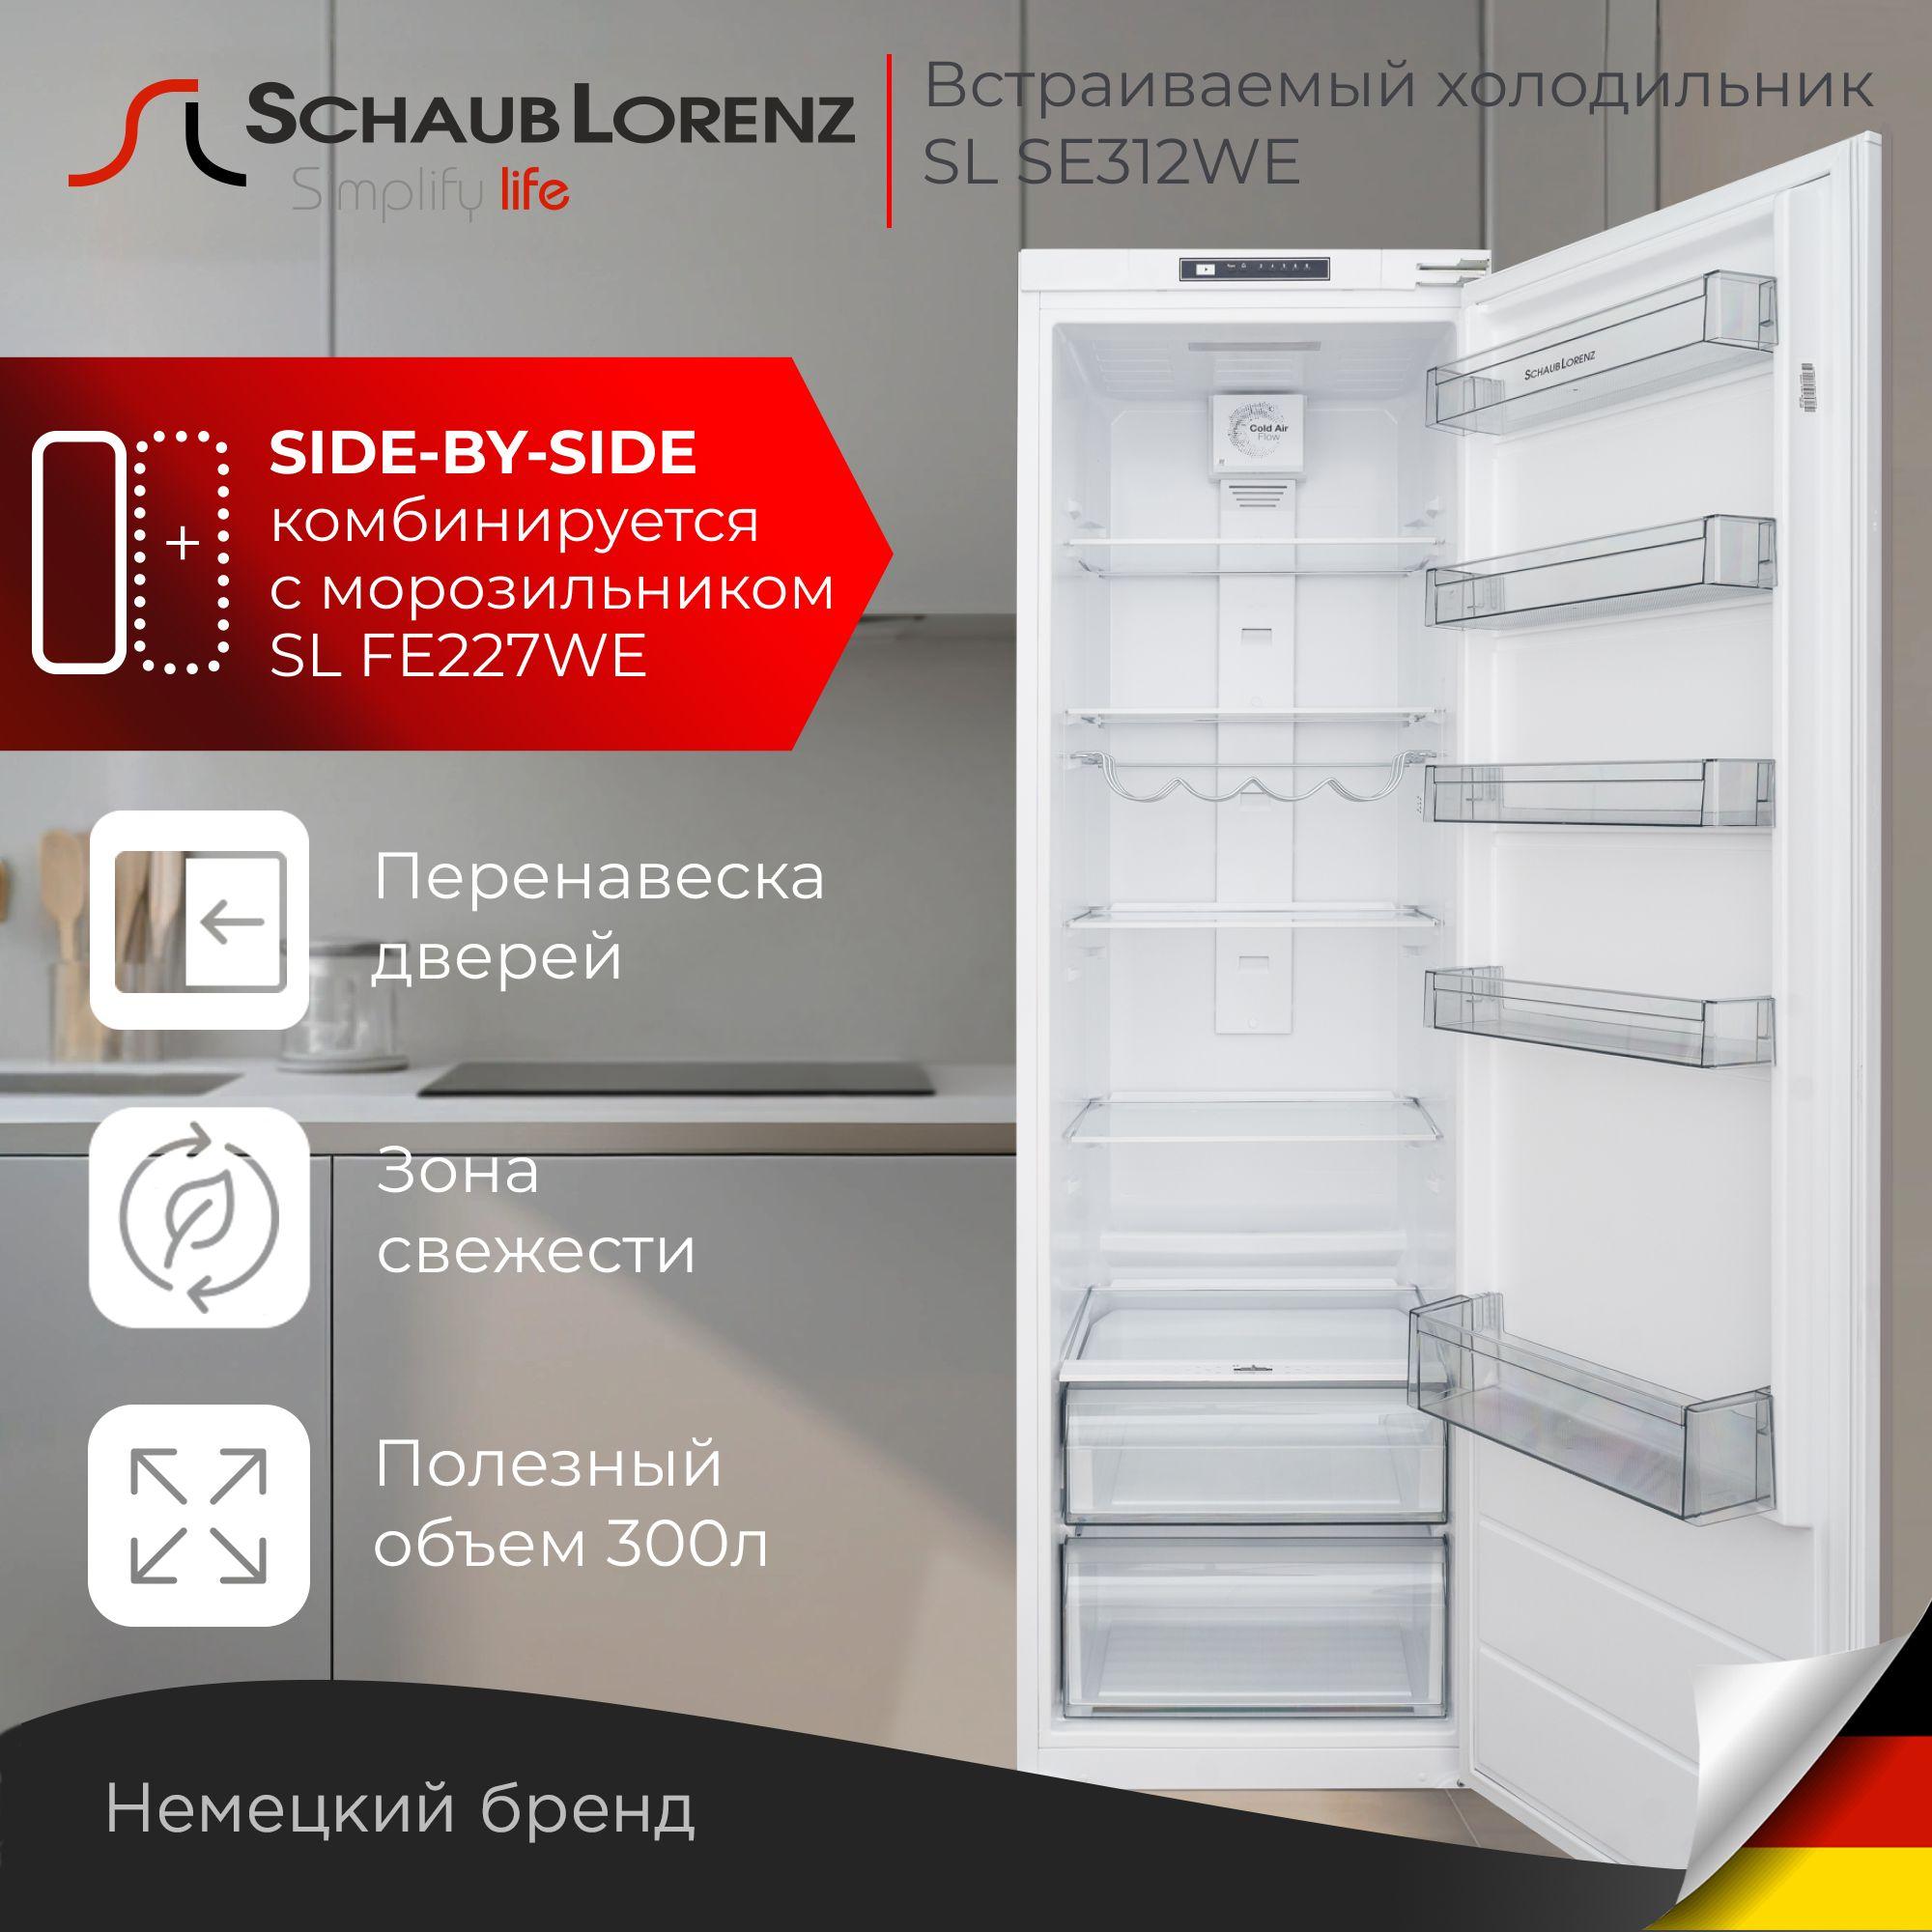 Холодильник встраиваемый однокамерный Schaub Lorenz SL SE312WE, производство Турция, Side-by-side, комбинируется с морозильником SL FE227WE,